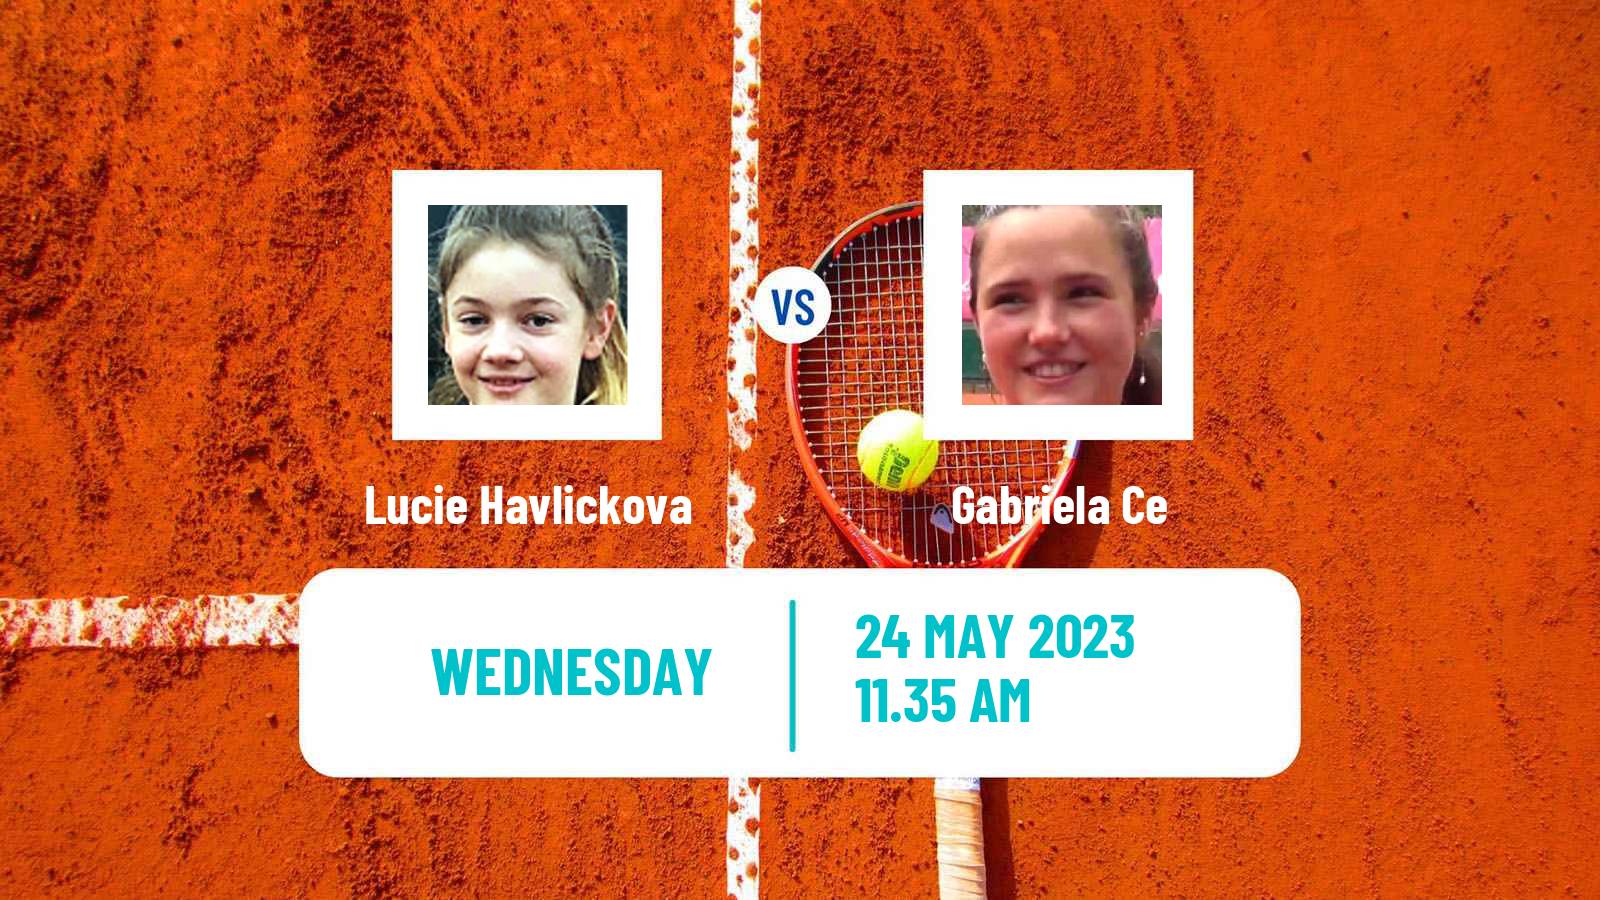 Tennis ITF W60 Grado Women Lucie Havlickova - Gabriela Ce